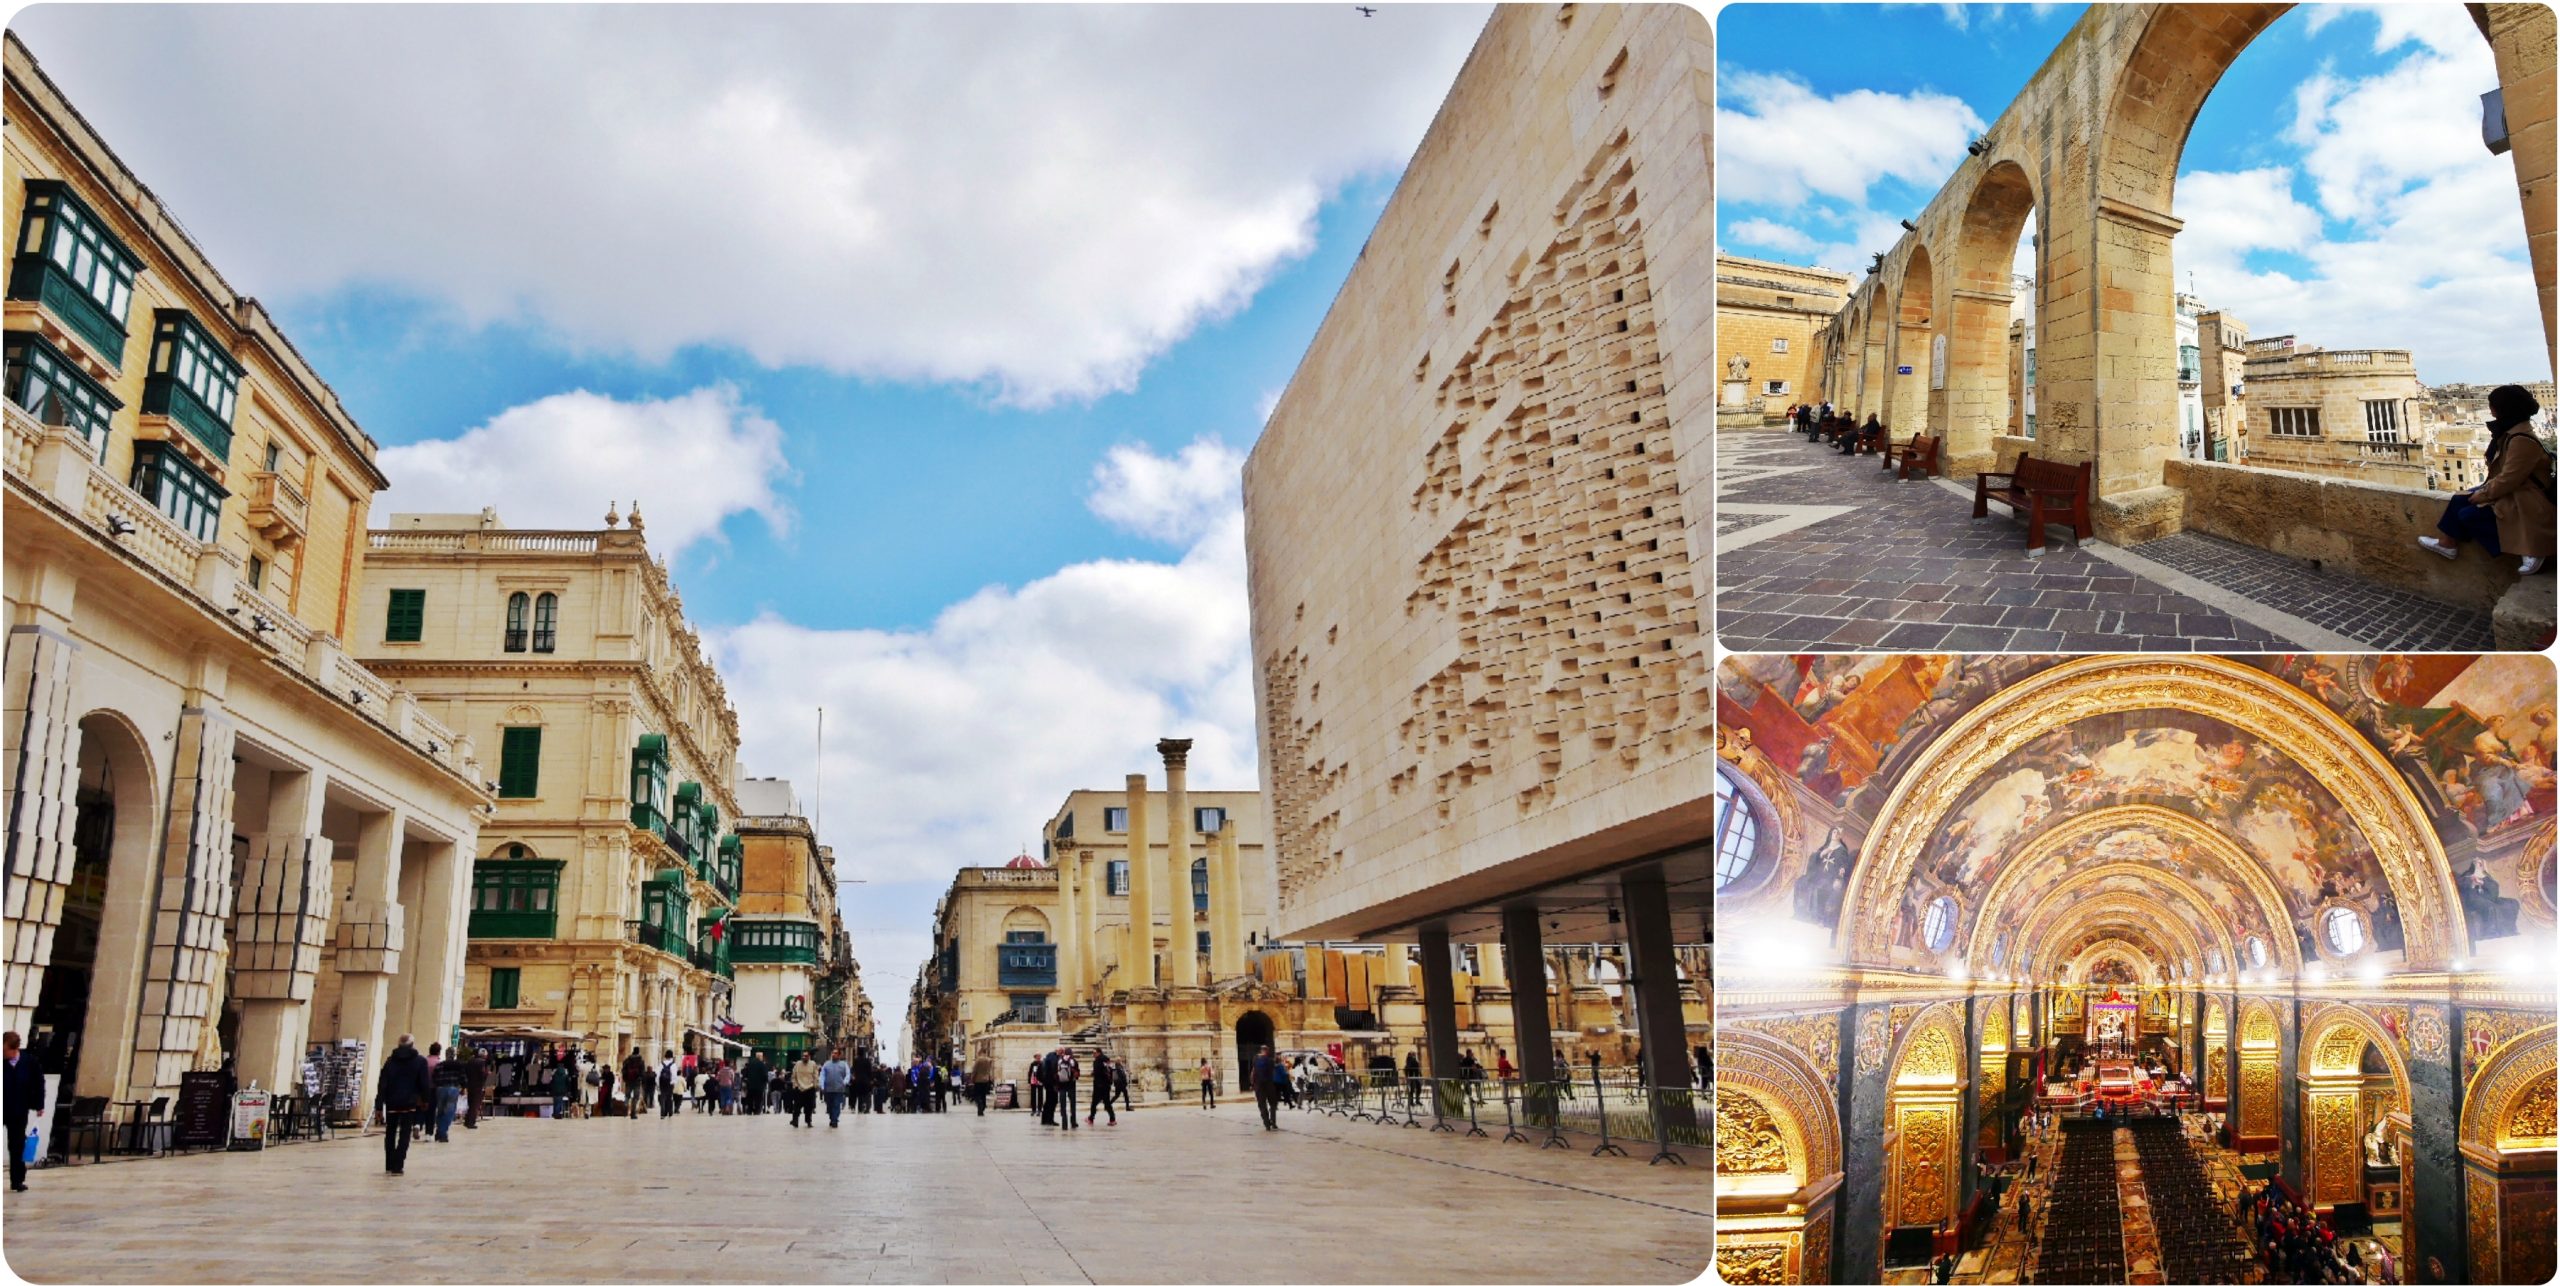 『歐洲。地中海』 馬爾他首都 瓦萊塔Valletta｜是歐洲名城也是世界上最小的首都之一  世界上最集中的歷史文化區  尊貴的金色騎士之城｜2019/0313-0318 歐洲馬爾他六天五夜之旅 @Mika出走美食日誌